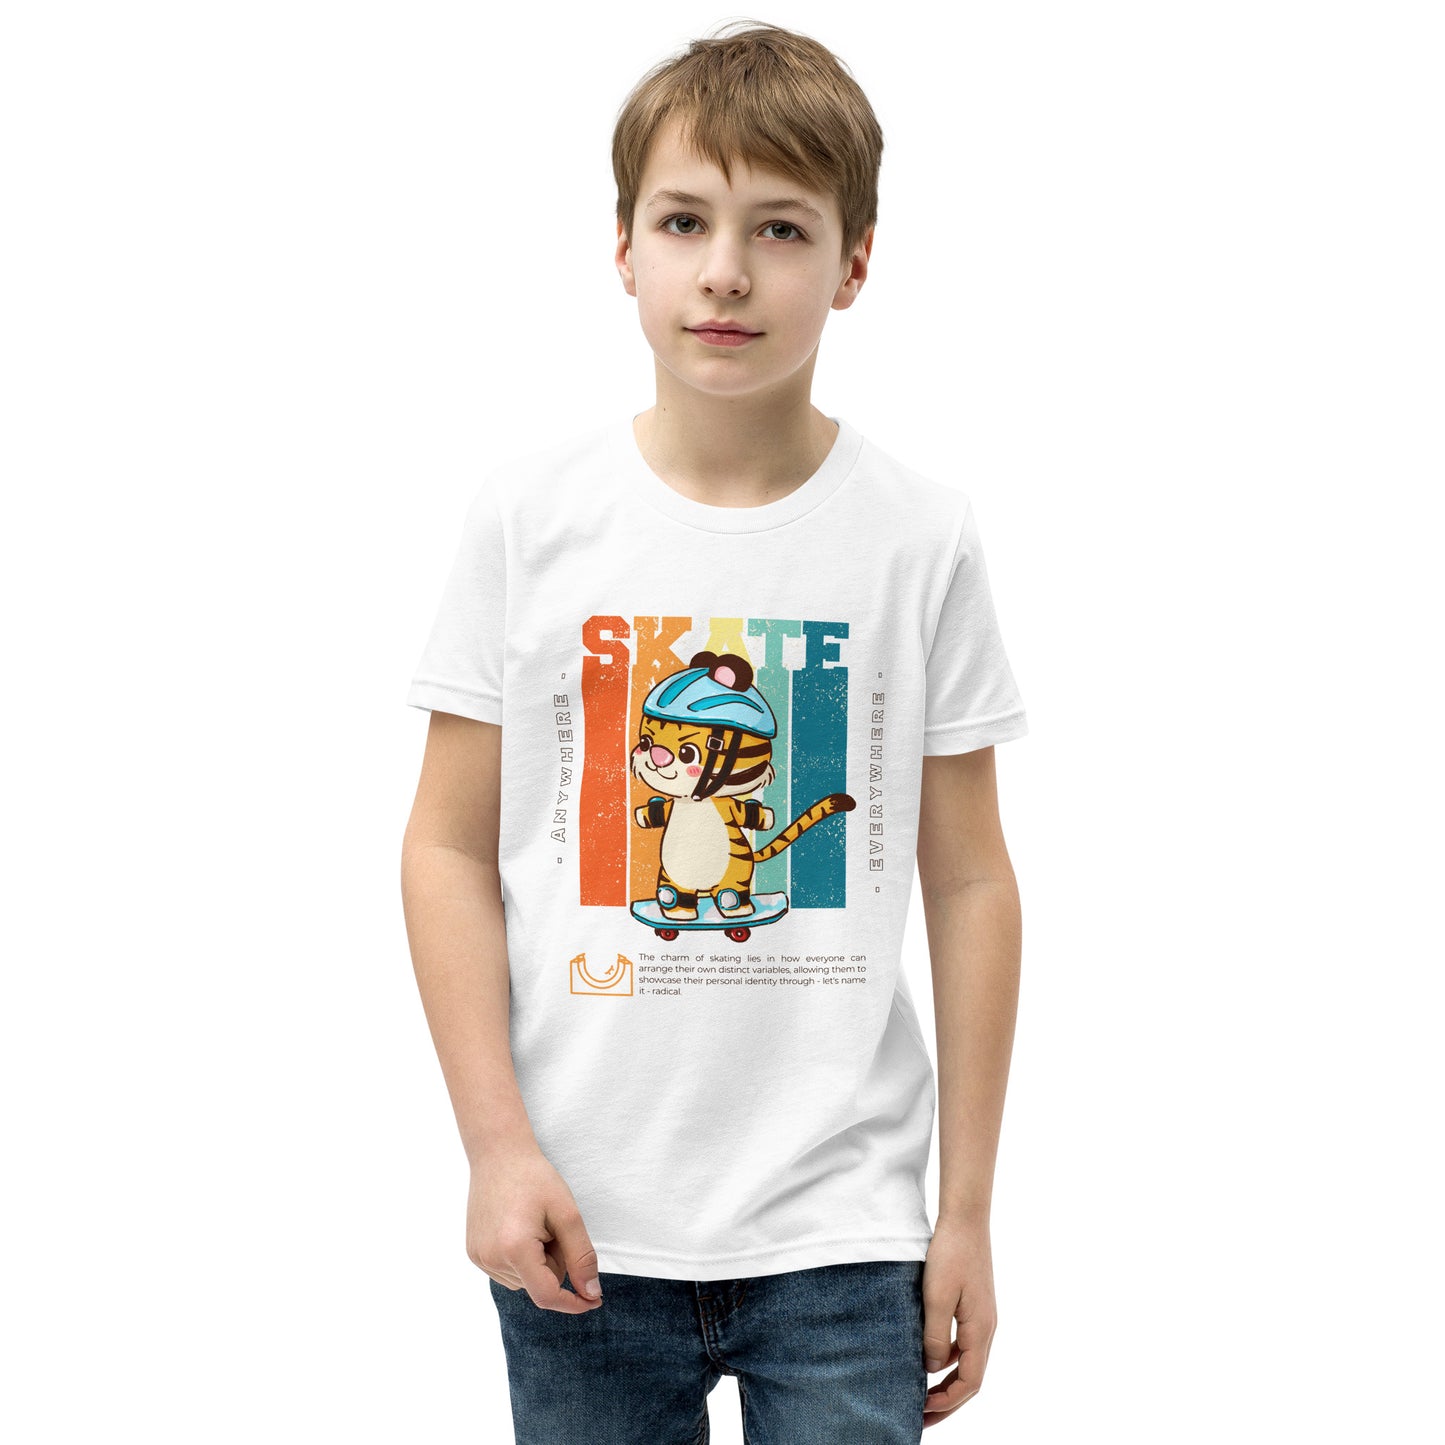 Skateboard - Youth Tee Shirt